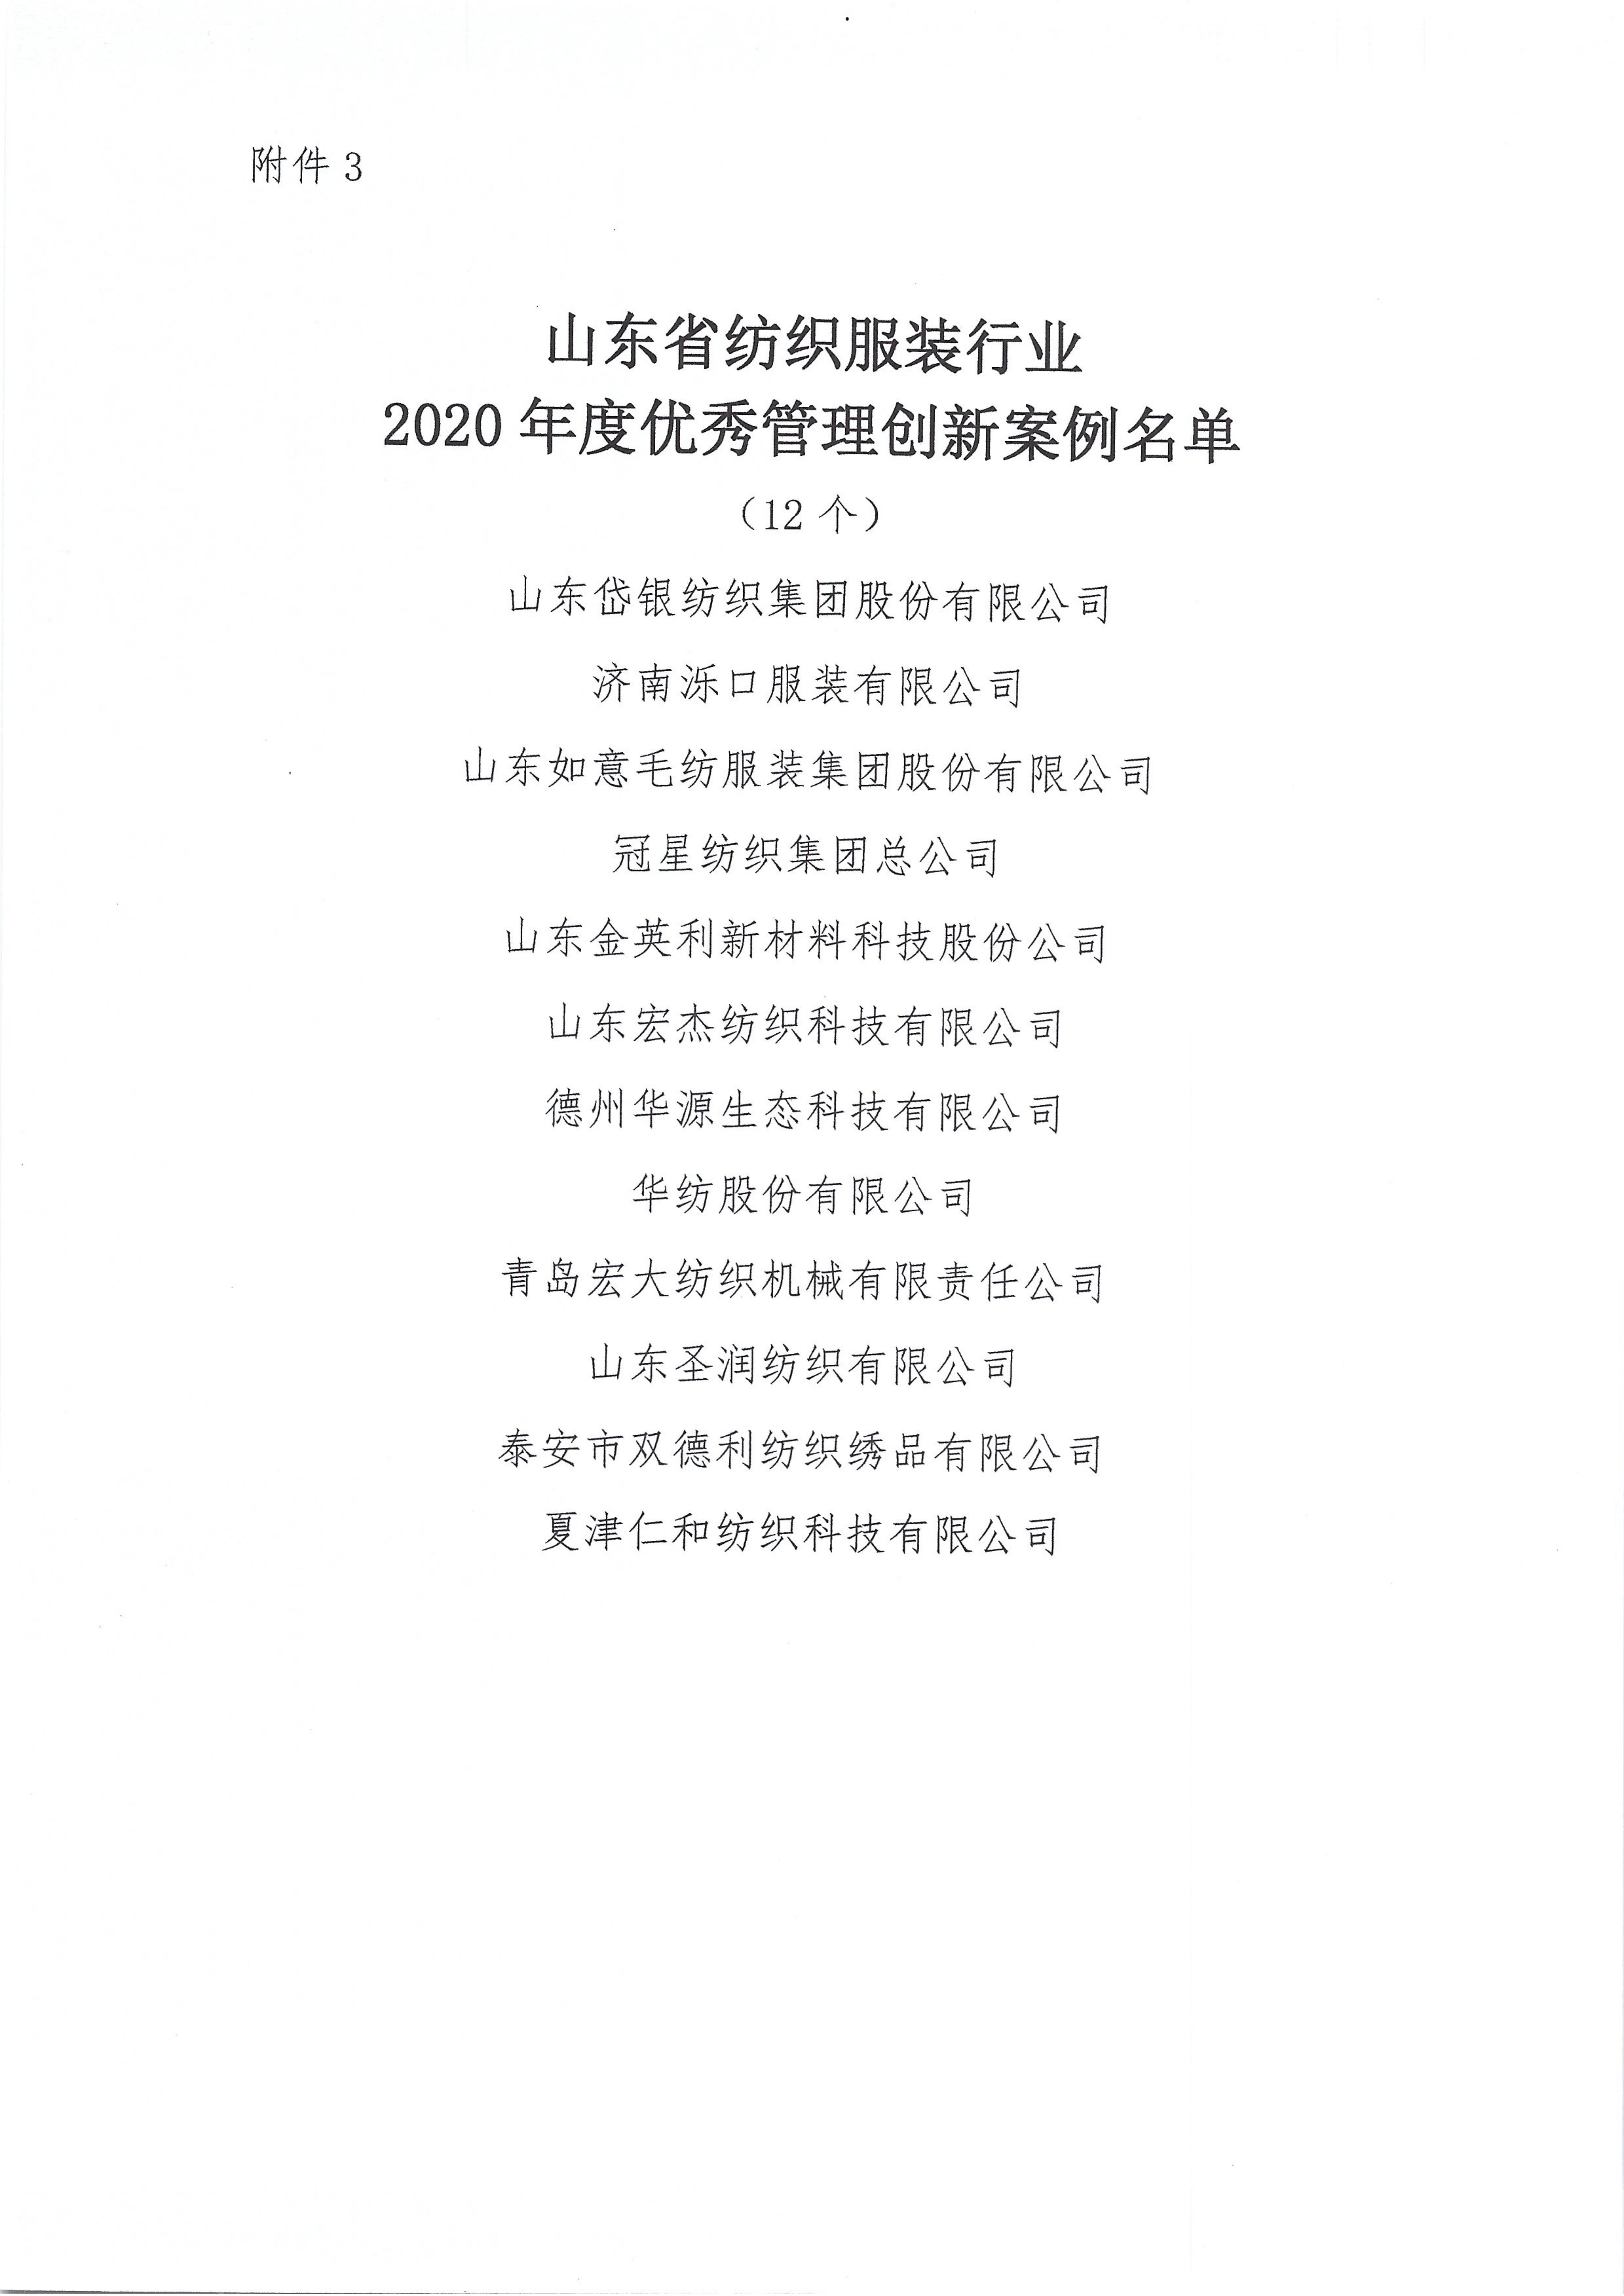 關于授予2020年度山東省紡織服裝行業新冠戰疫特別貢獻獎等獎項的決定_08.jpg